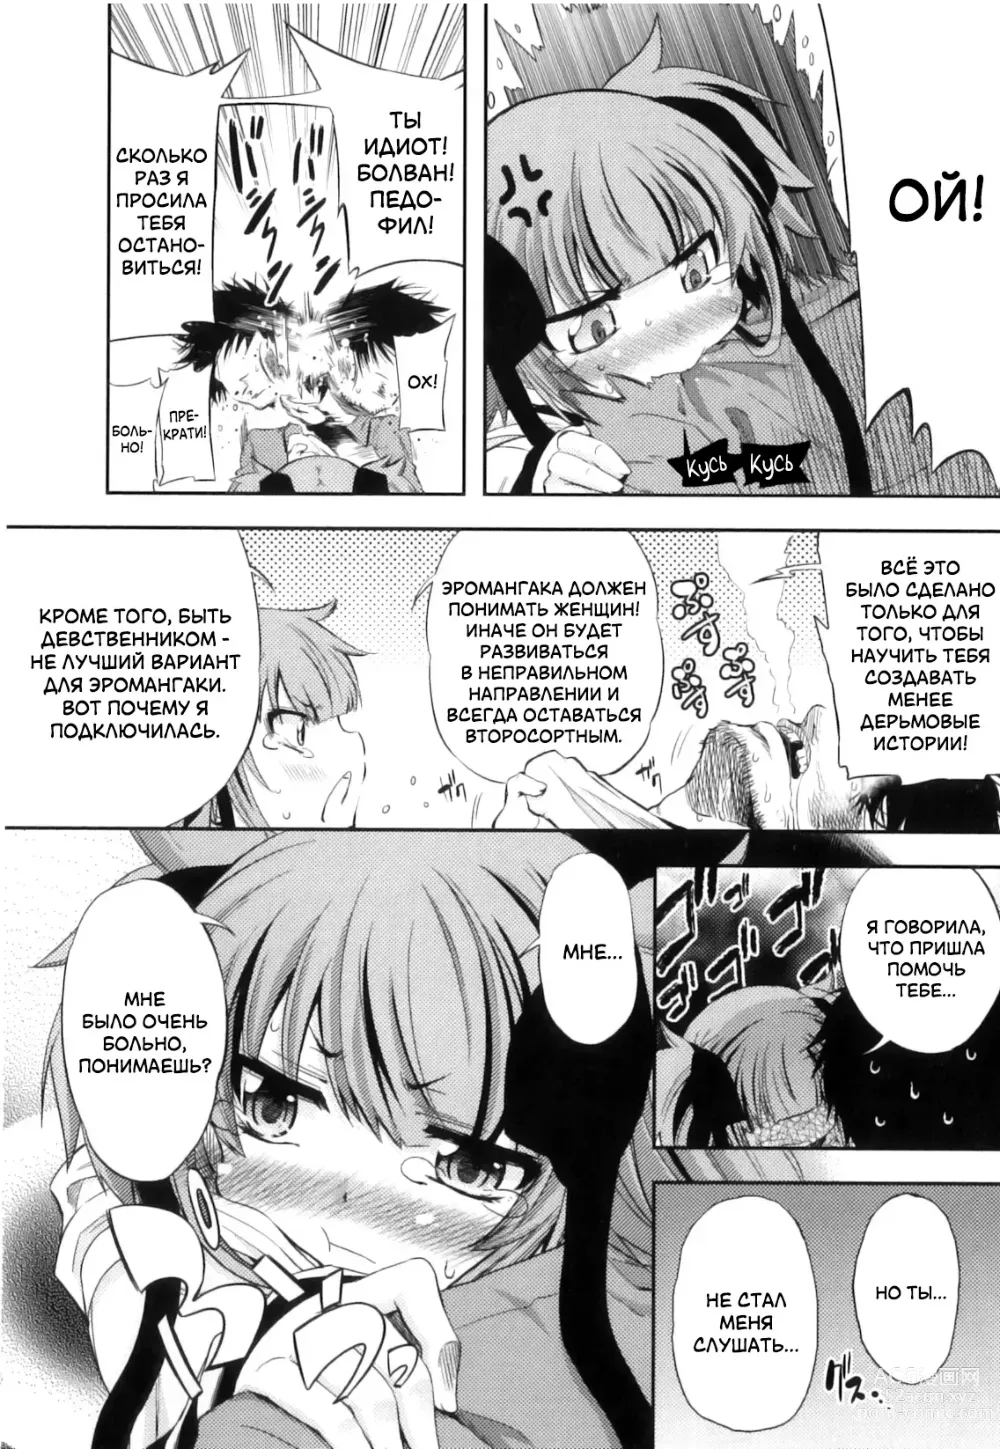 Page 24 of manga Это просто нереально!